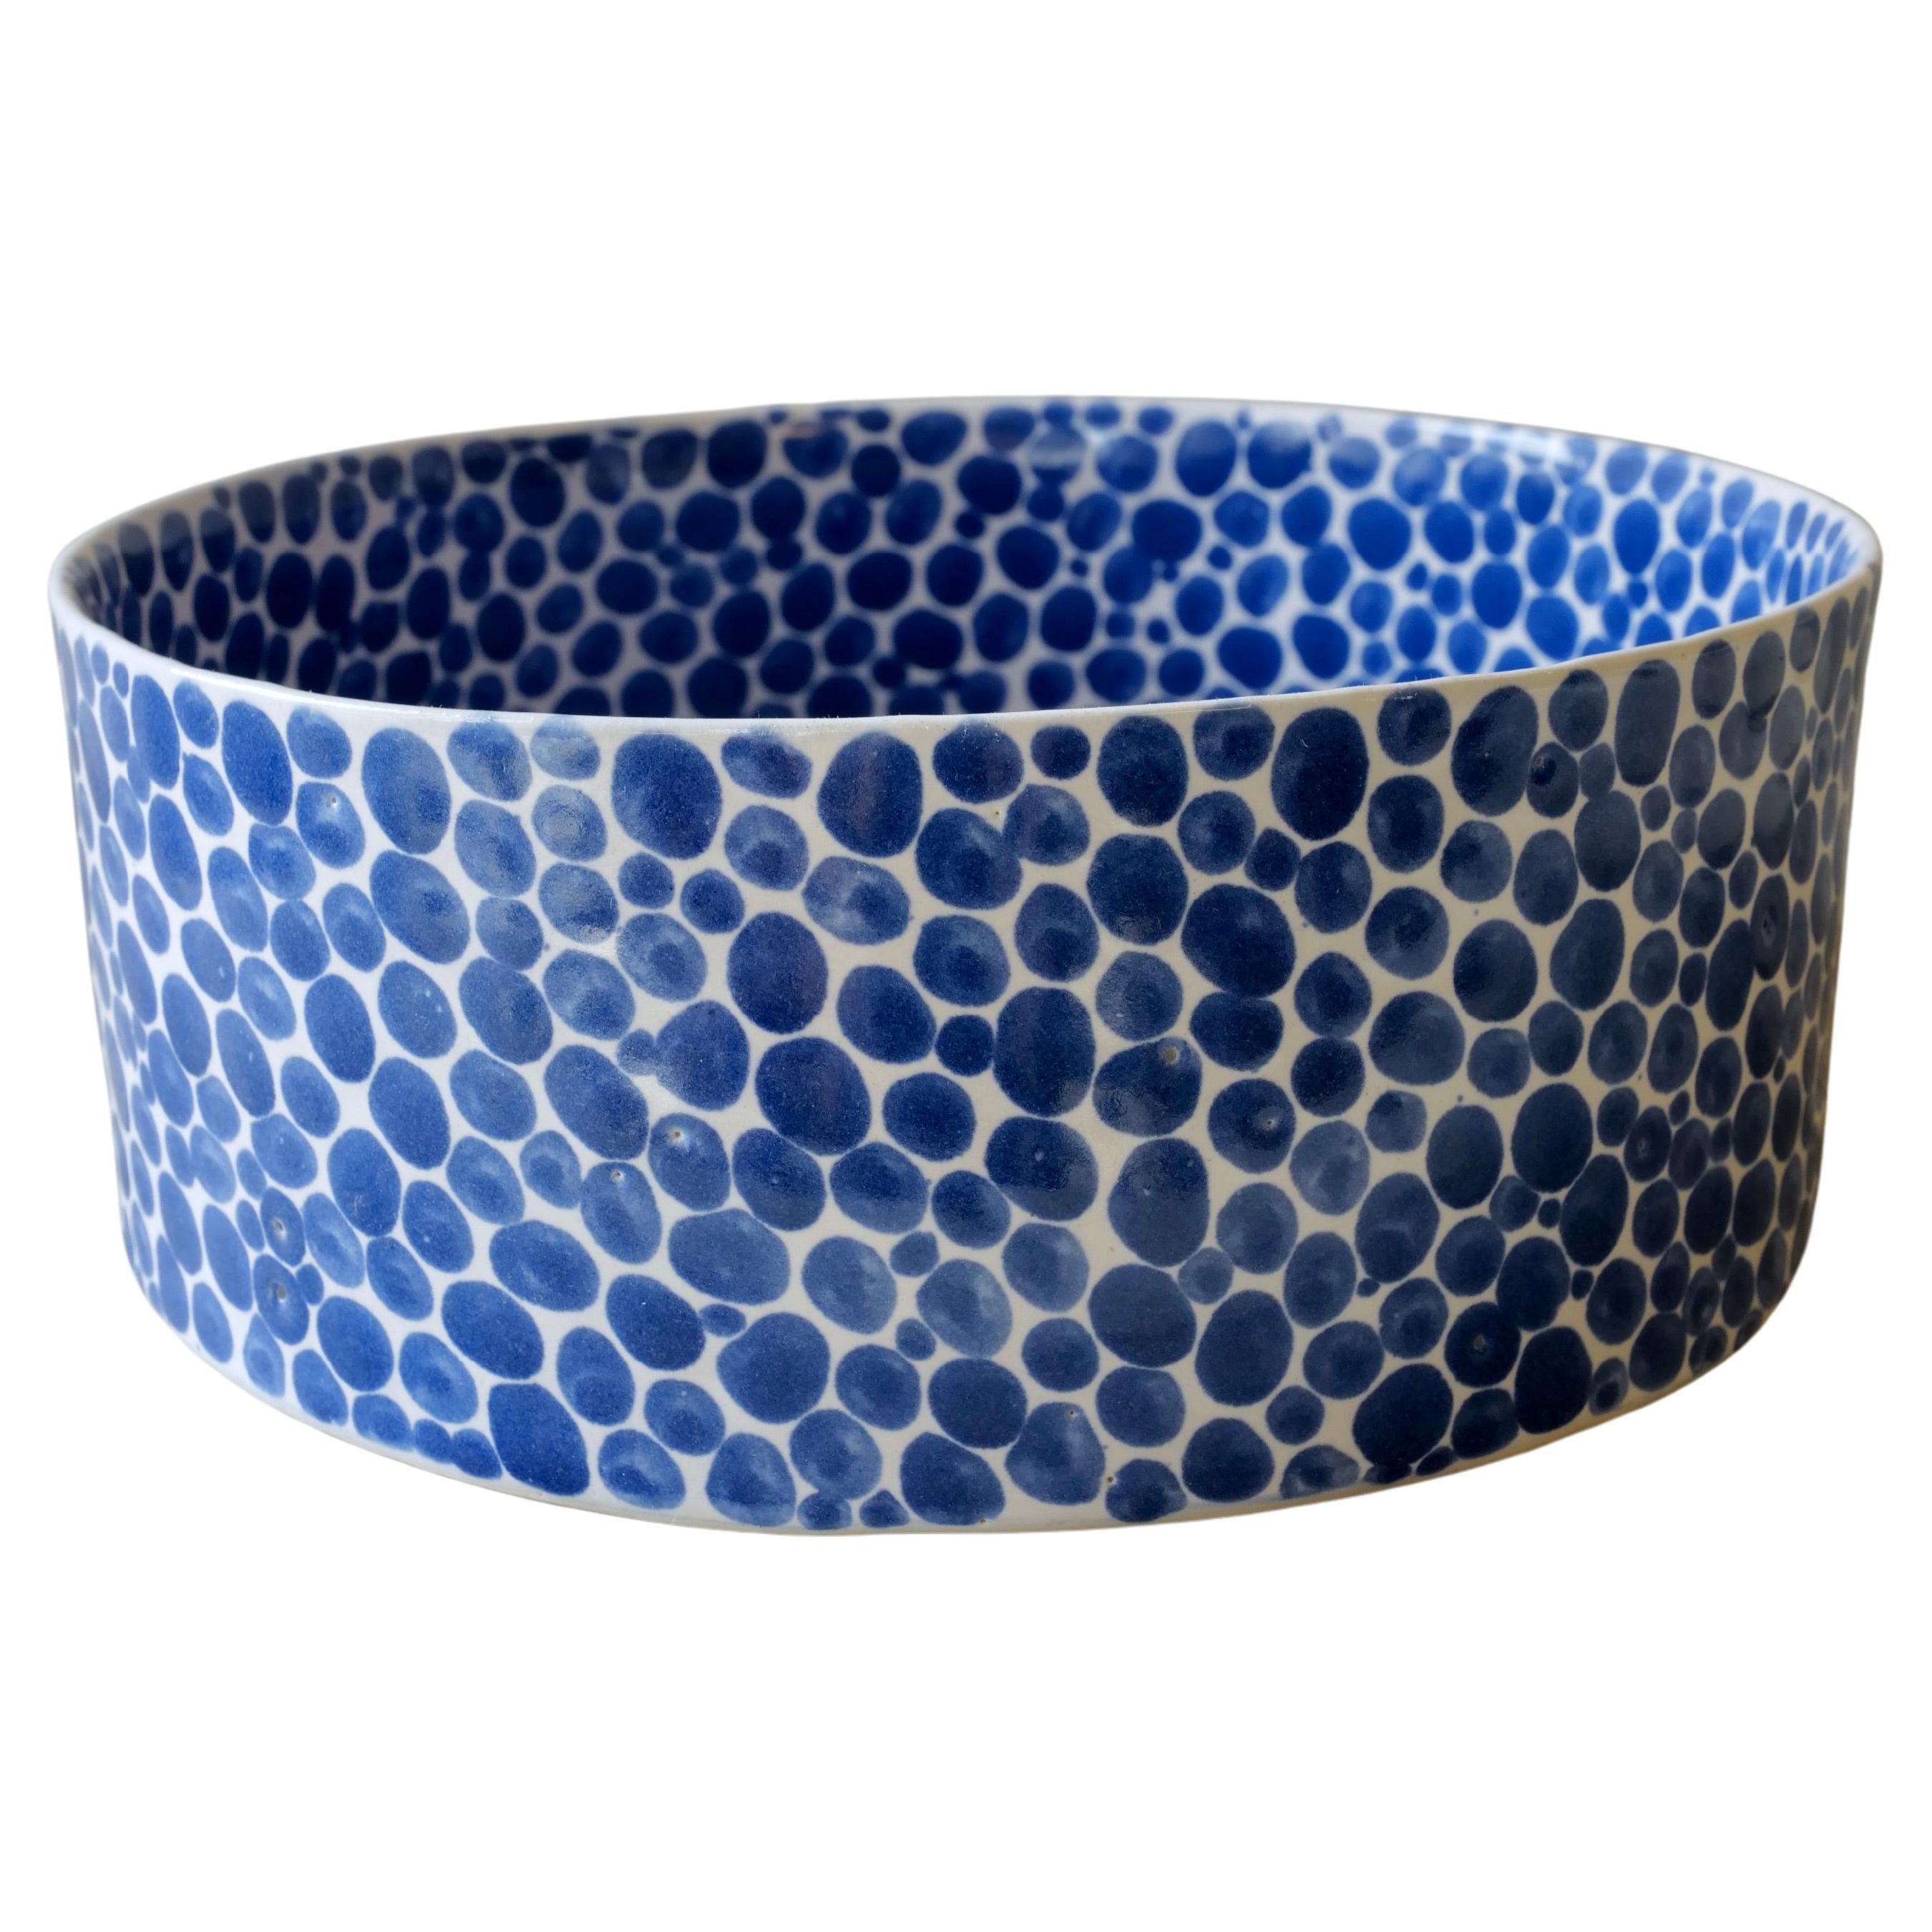 Blue Dots Wide Porcelain Bowl by Lana Kova